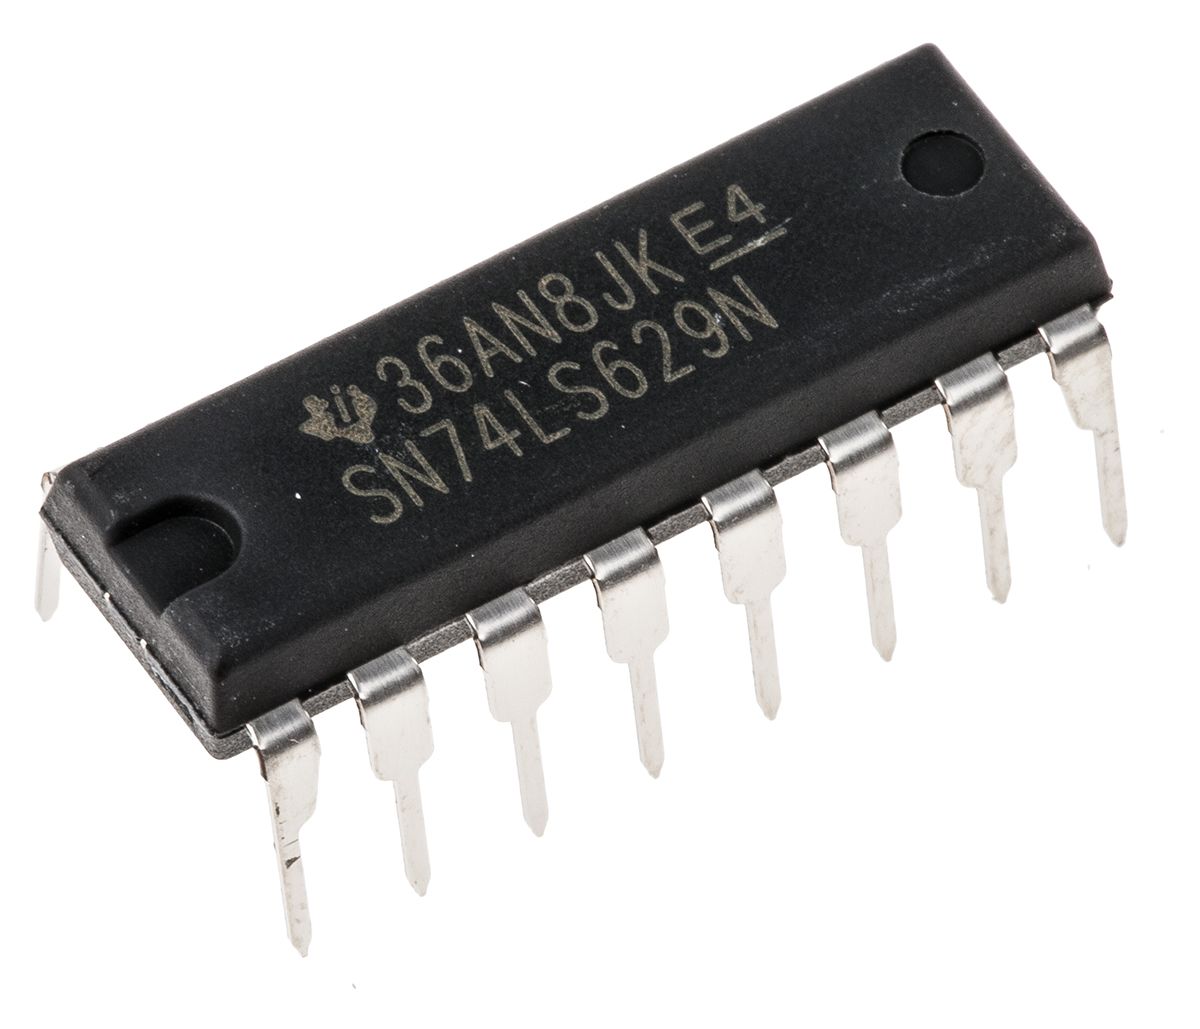 Oscilátor SN74LS629N, počet kolíků: 16, SOIC 19.3 x 6.35 x 4.57mm